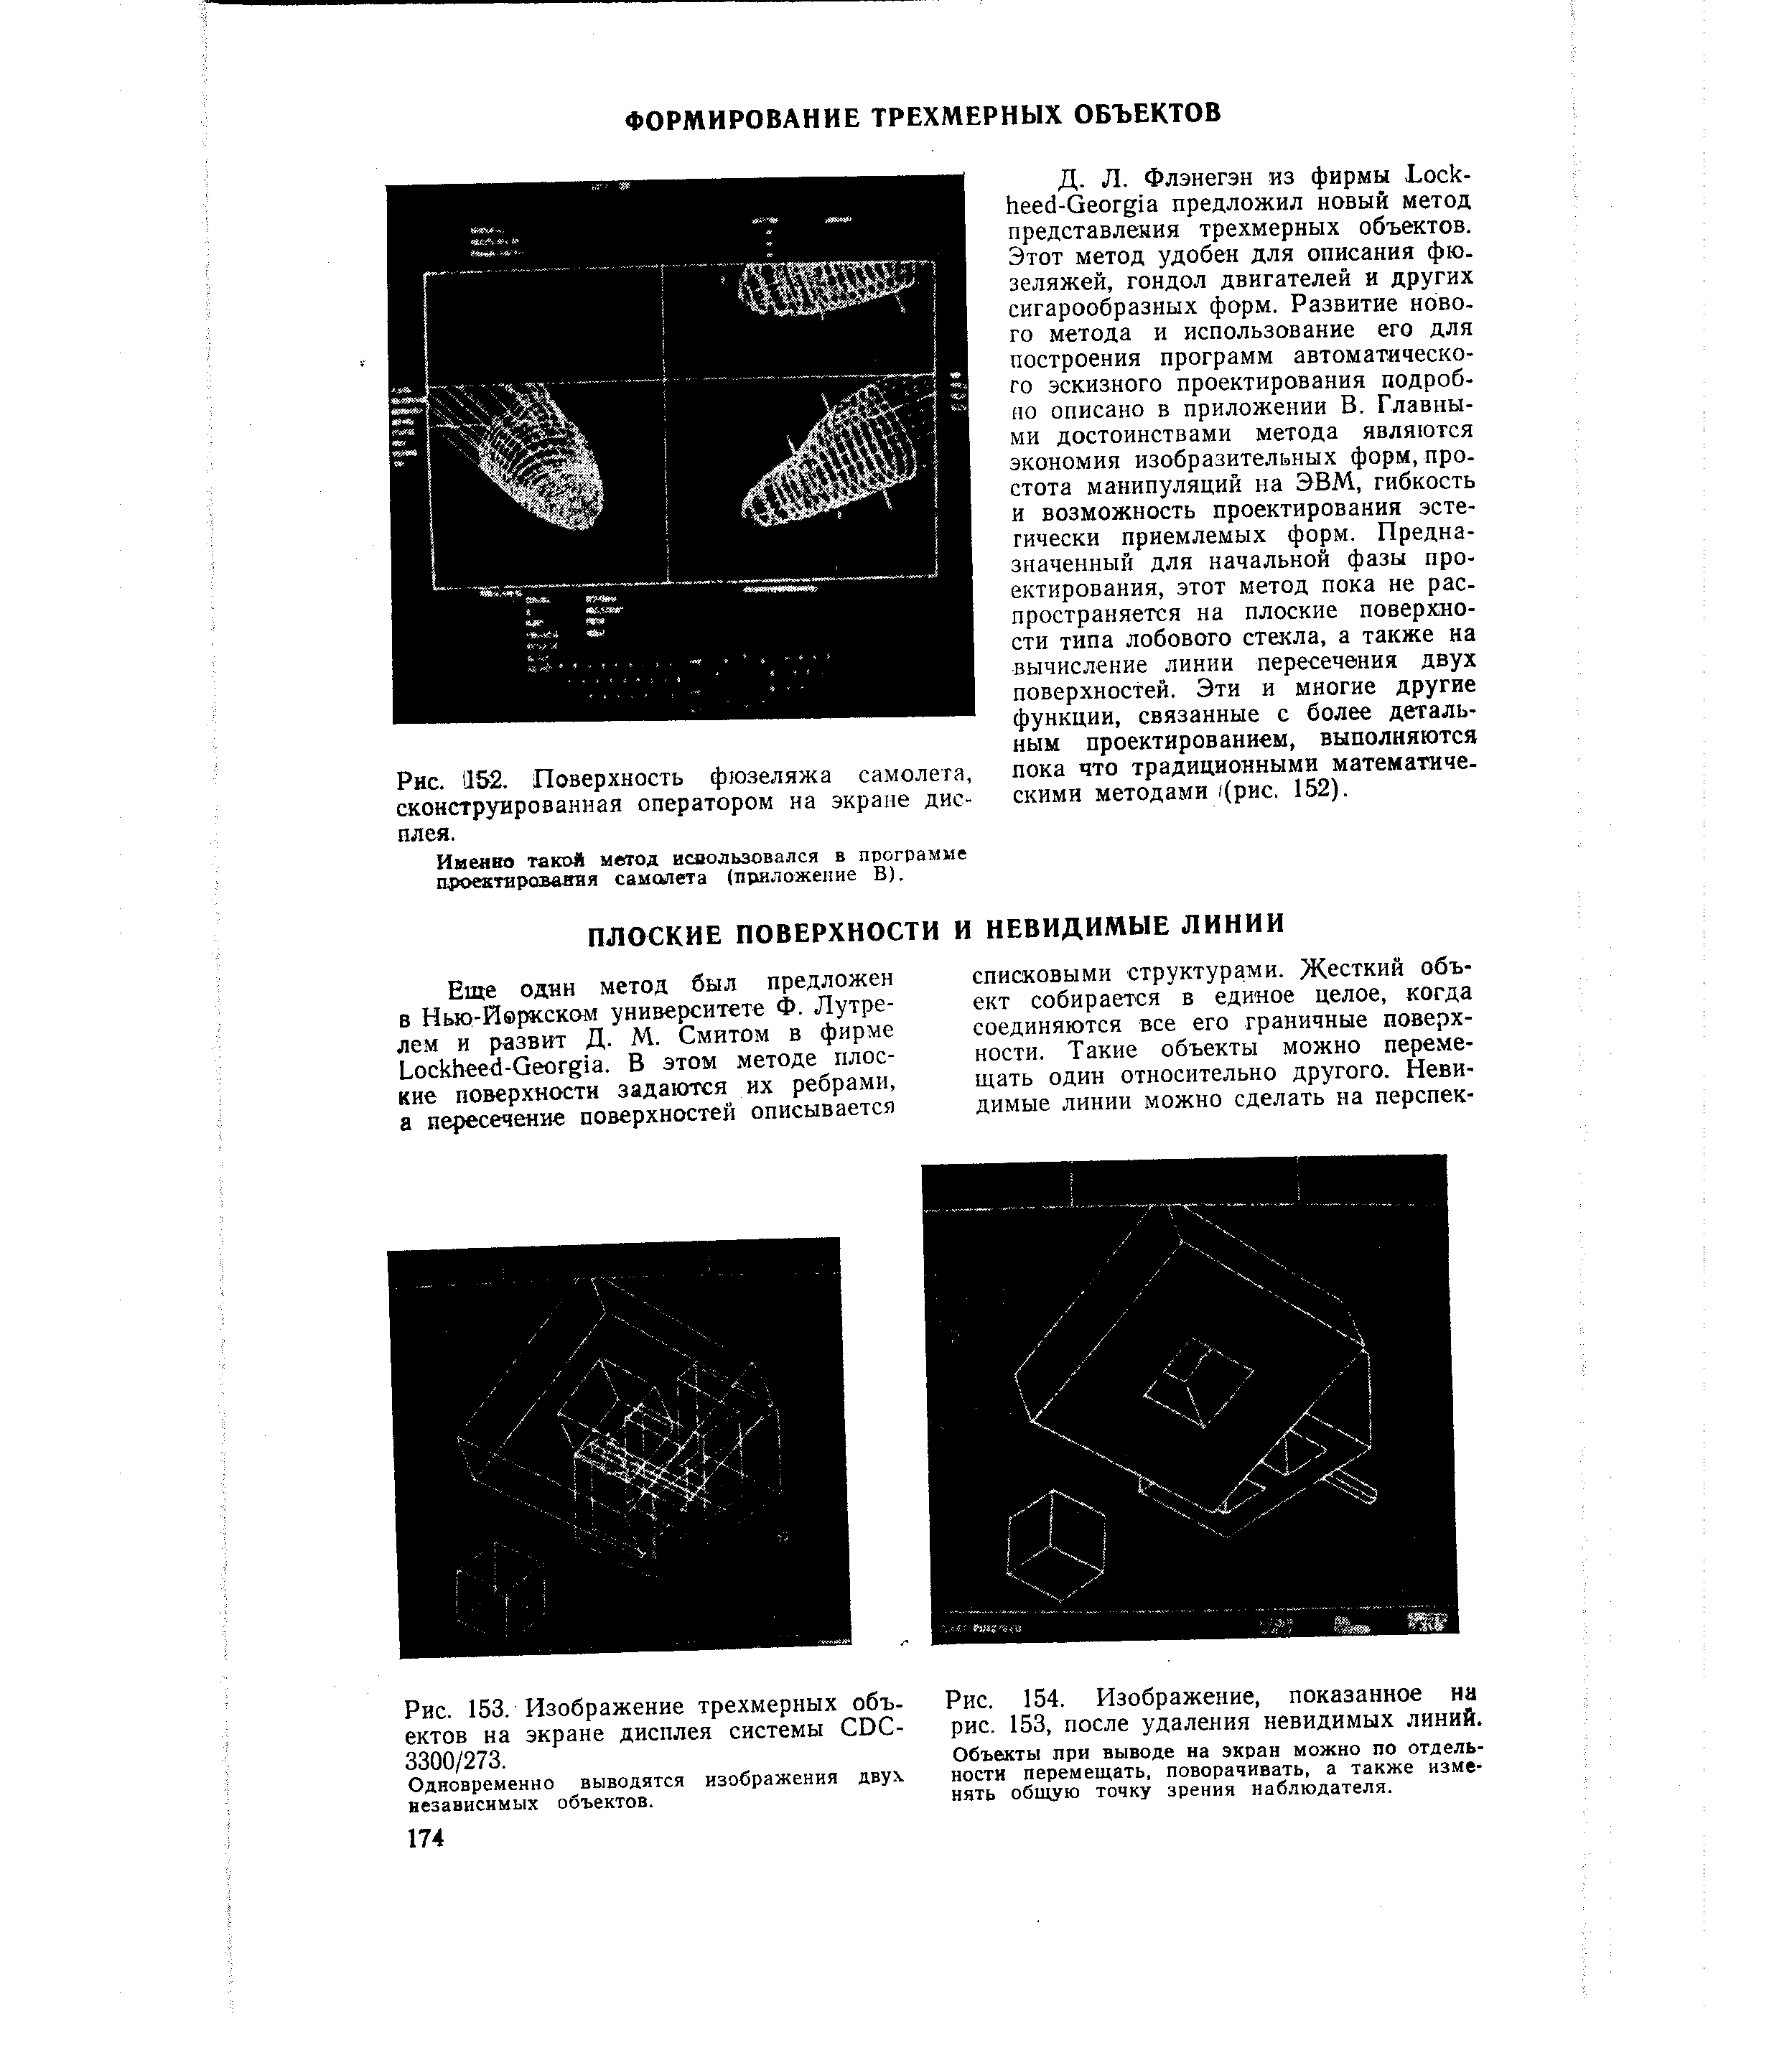 Рис. 153, Изображение трехмерных объектов на экране дисплея системы СОС-3300/273,
